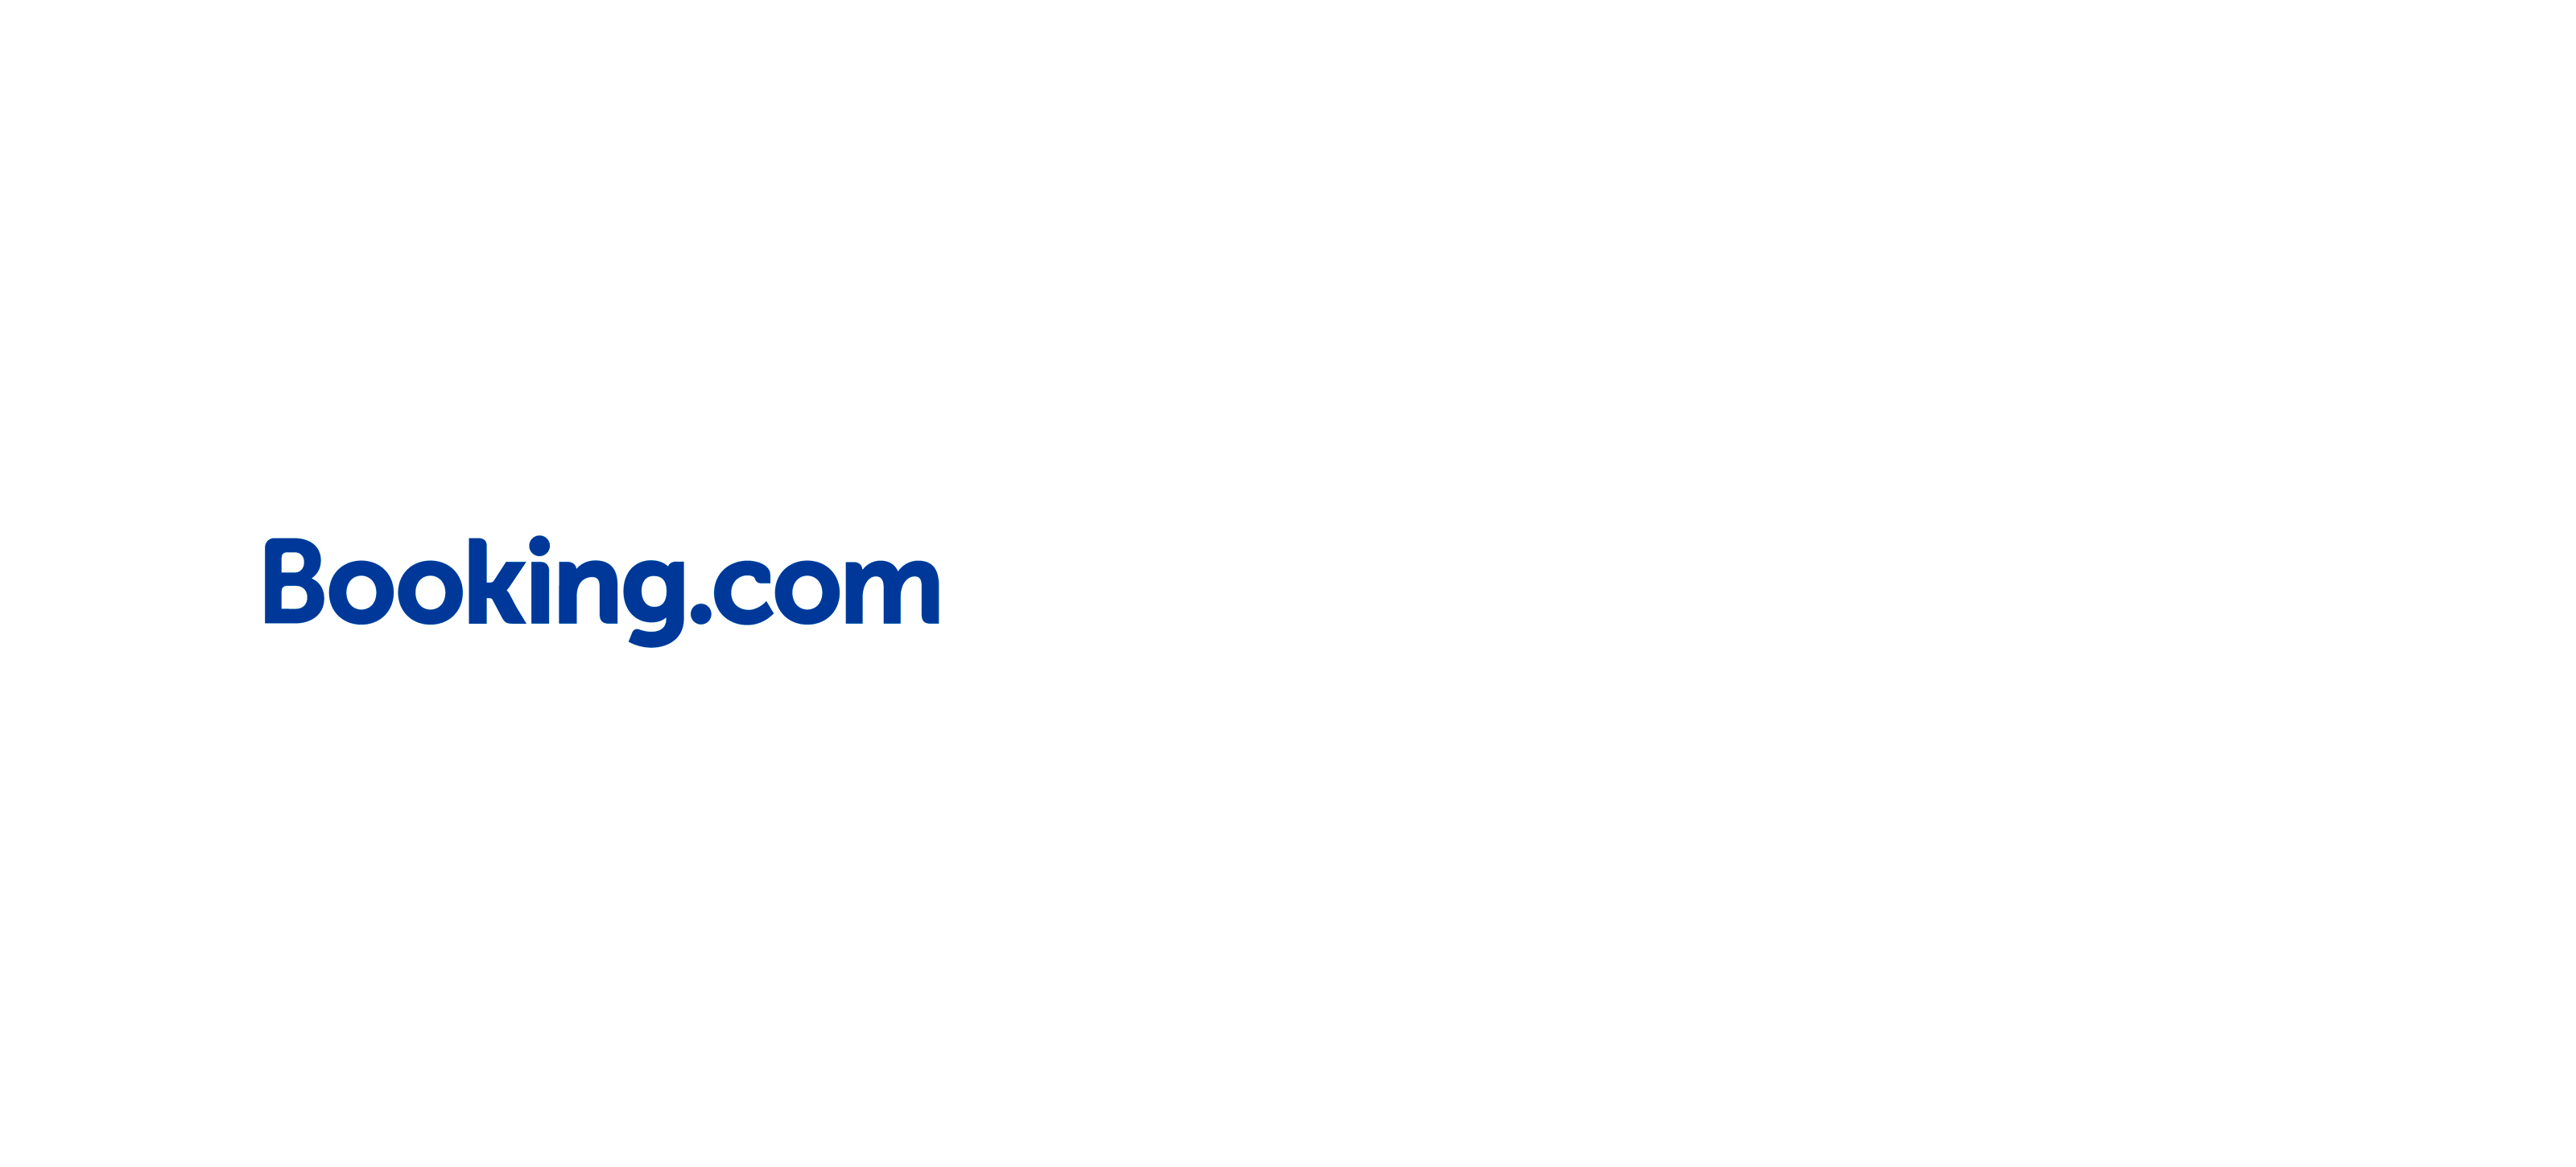 Logo Swarm - Booking Com Tripadvisor Logos | Full Size PNG Download |  SeekPNG